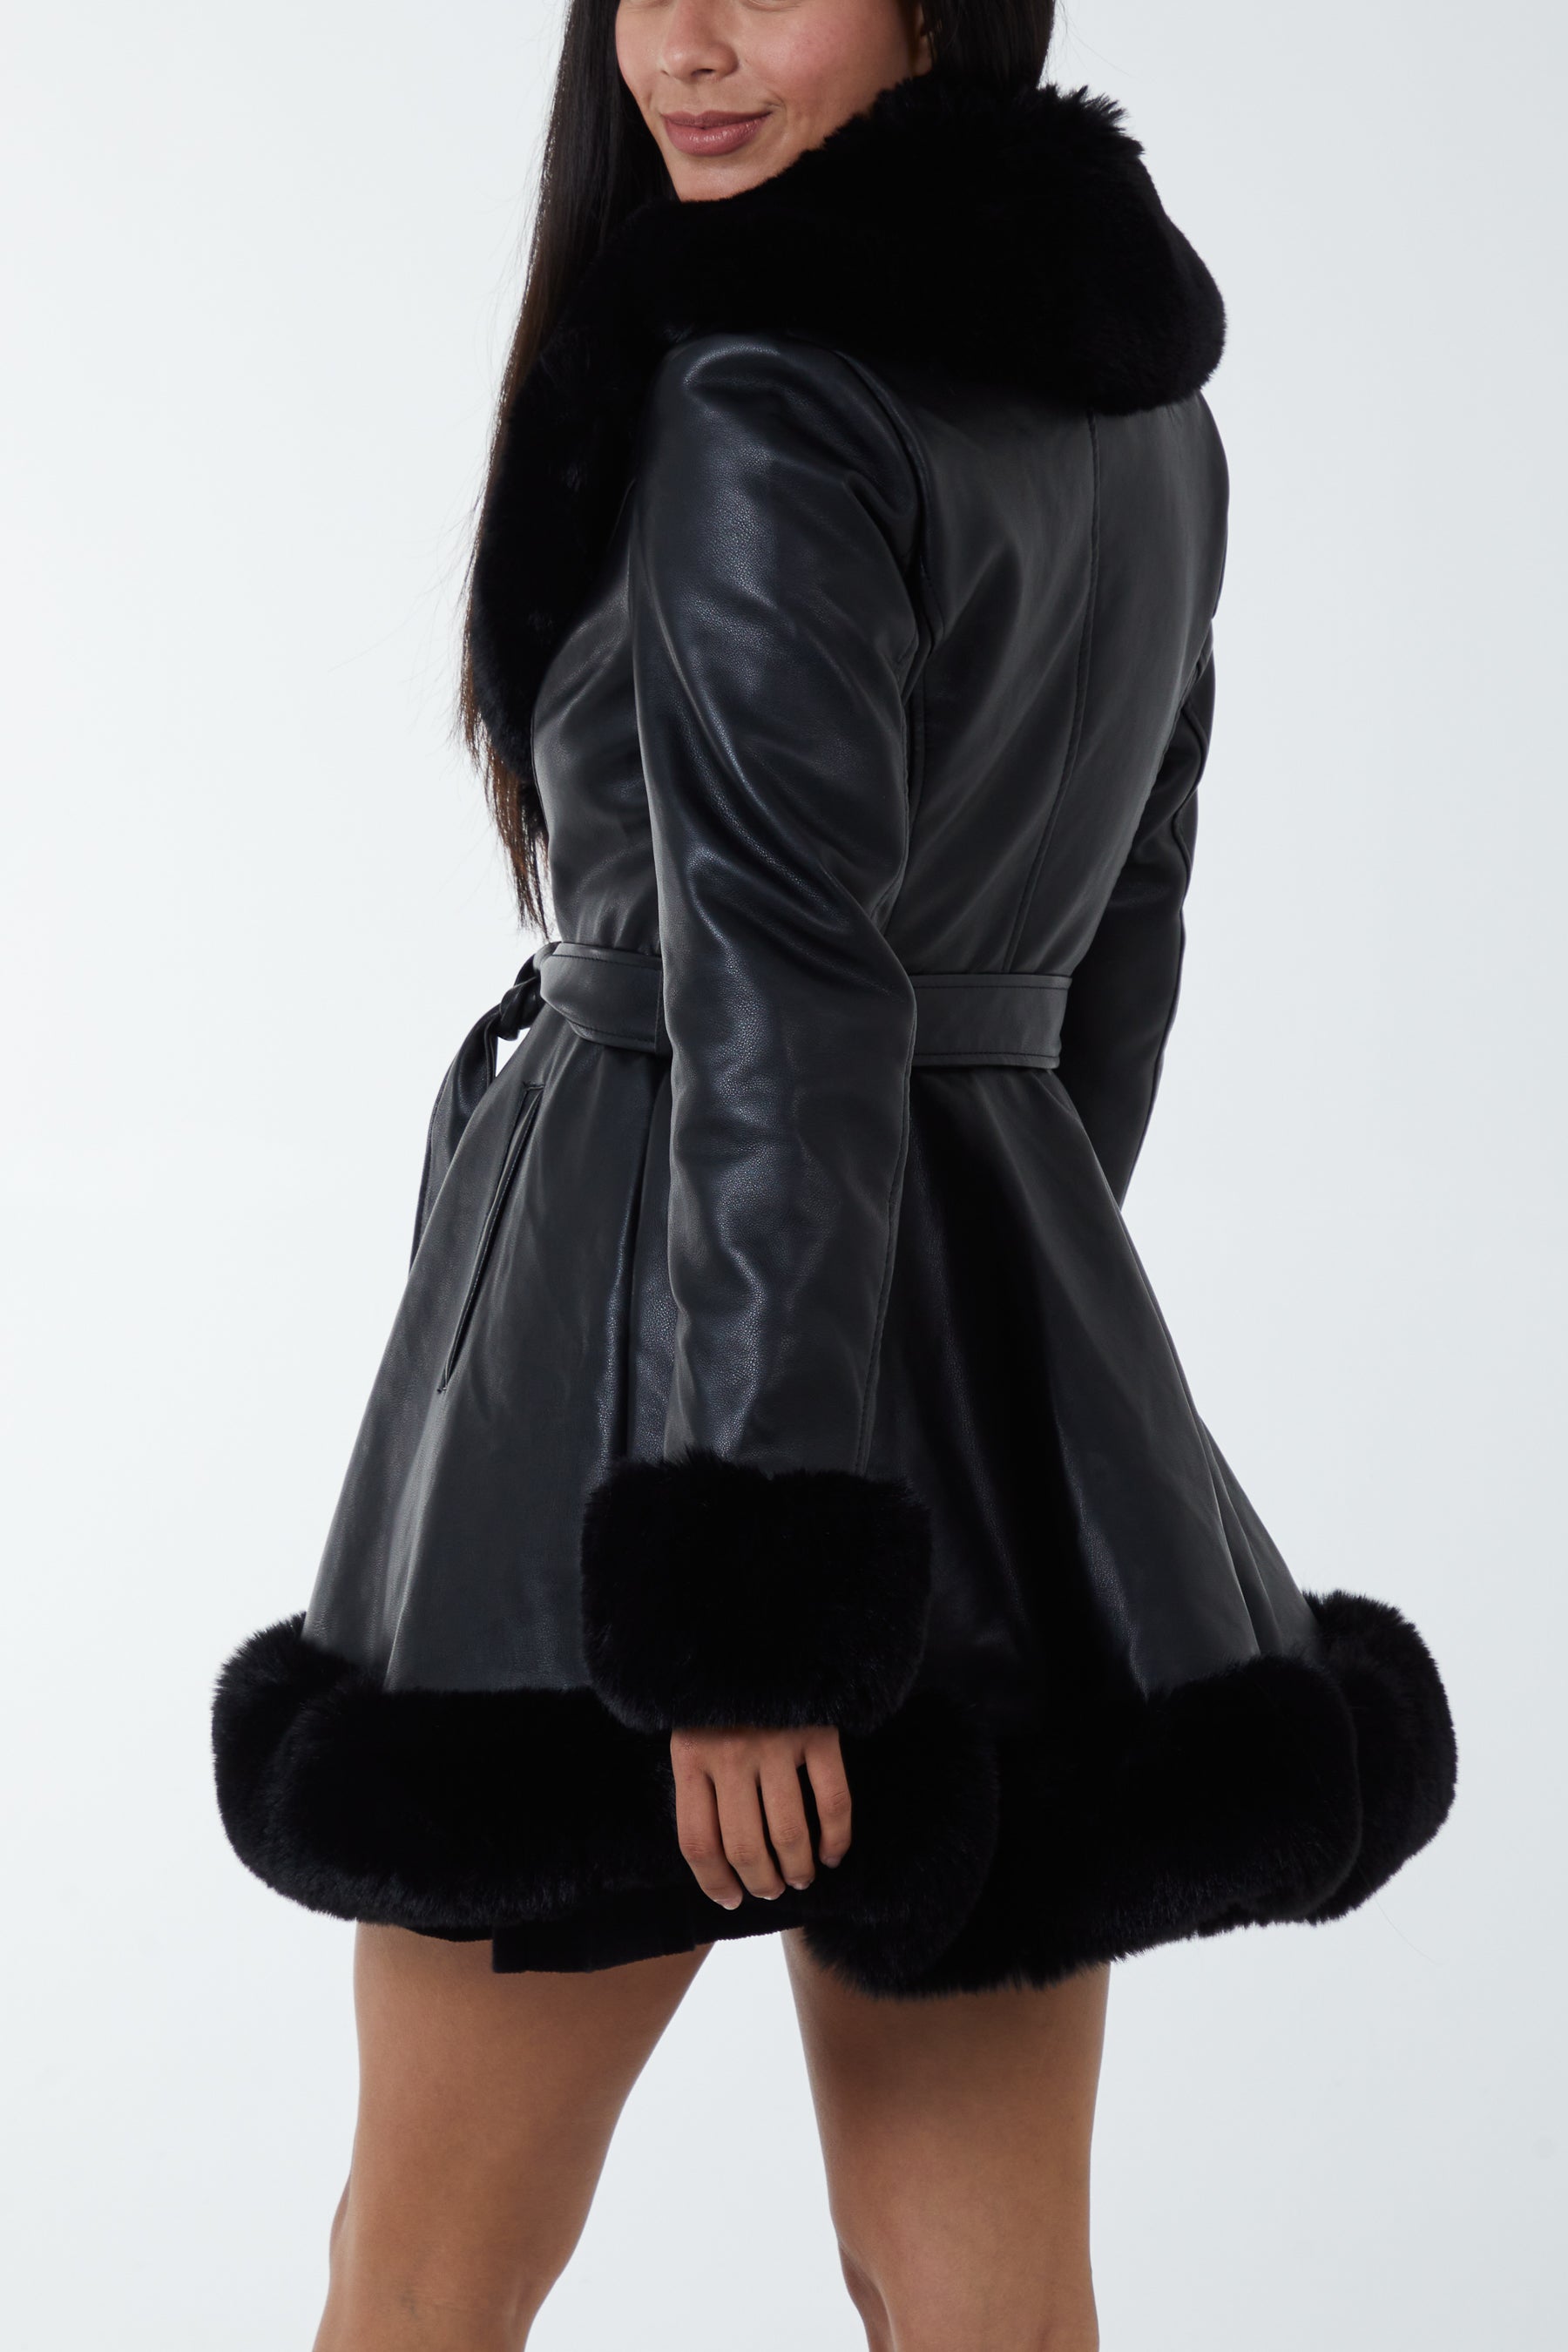 Fur Trimmed Belted Leather Skater Skirt Coat